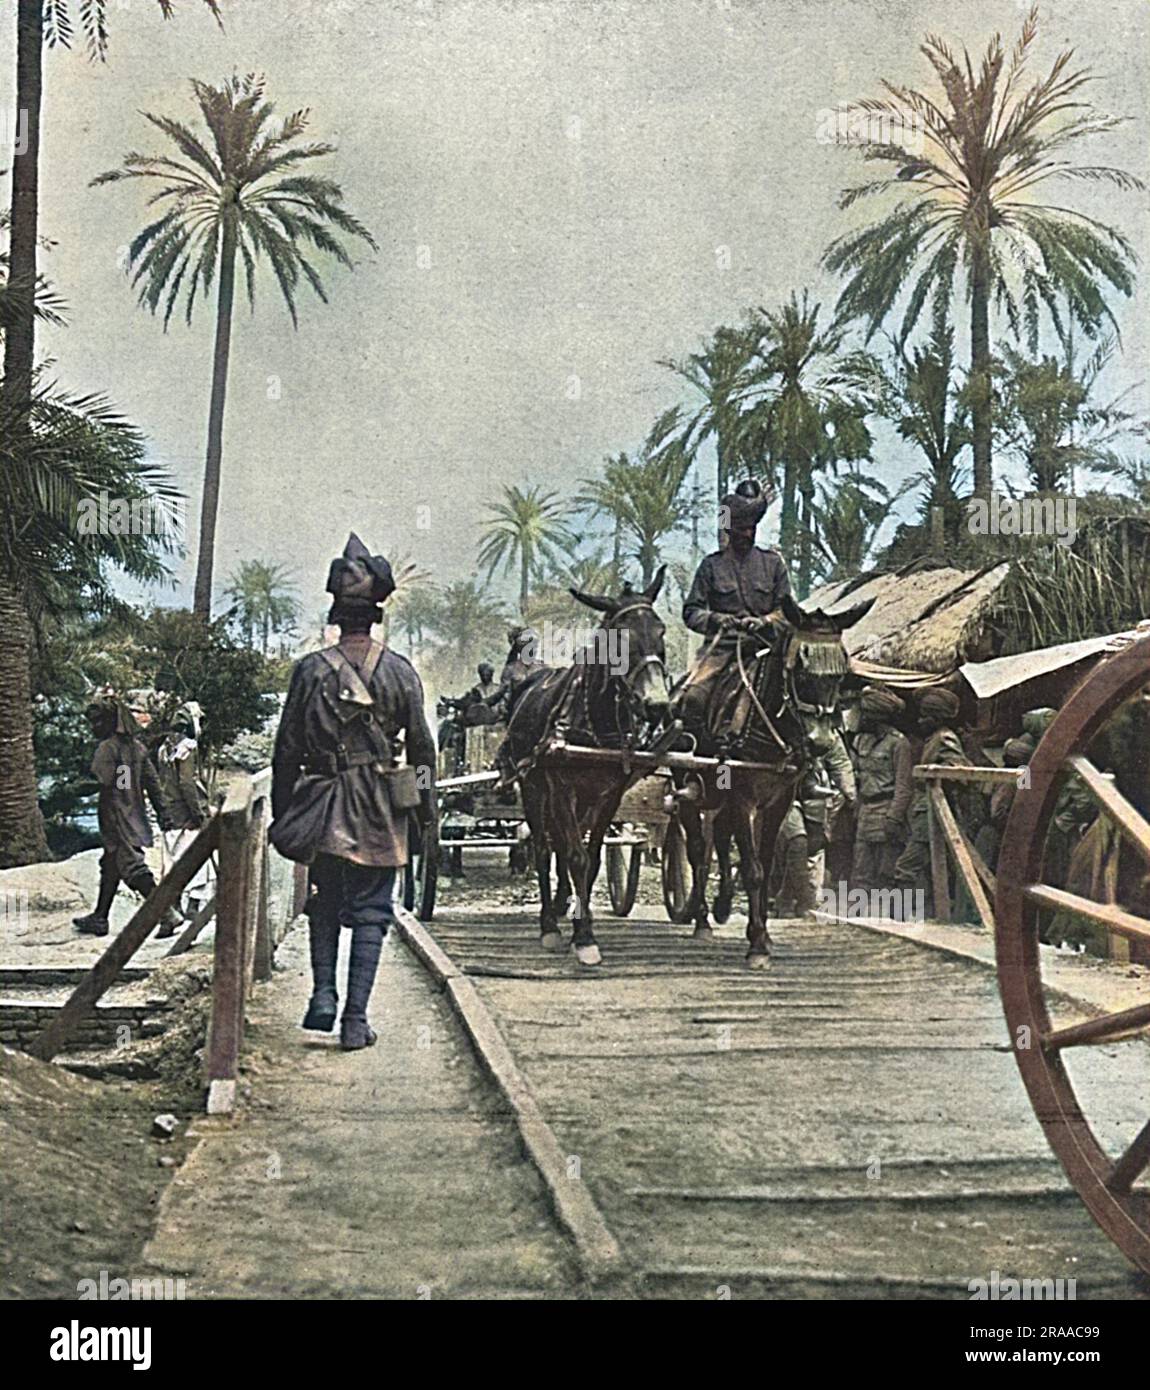 Scènes avec l'armée britannique en Mésopotamie. Transport indien passant par une voie en Mésopotamie (Irak moderne) pendant la première Guerre mondiale. Date: 1916 Banque D'Images